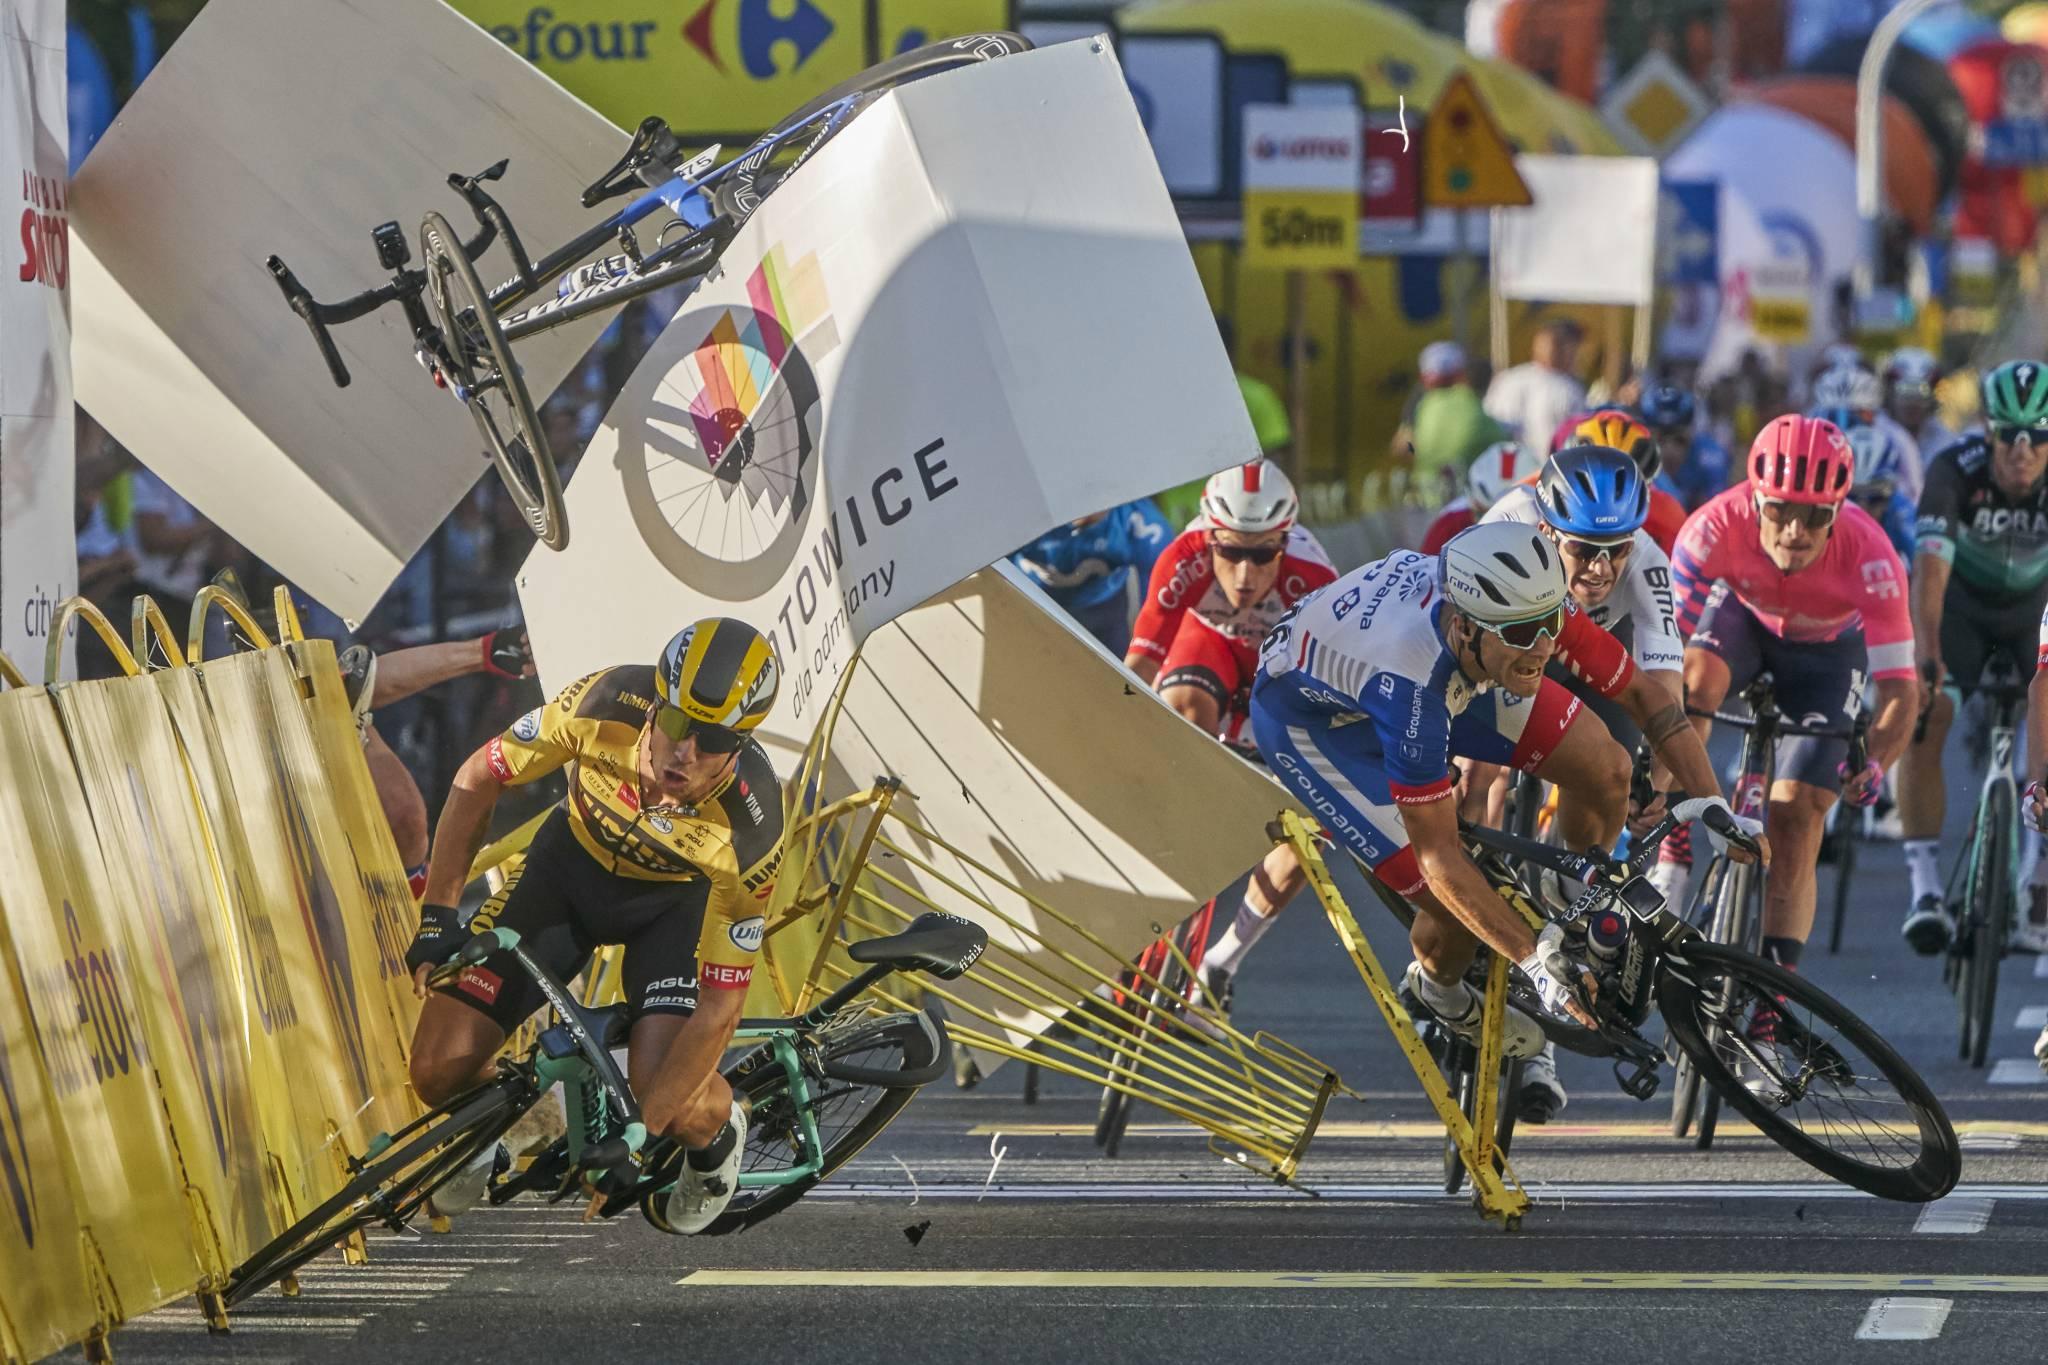 Holenderski kolarz, Dylan Groenewegen (z lewej), w czasie wypadku tuż przed metą etapu wyścigu Tour de Pologne; Katowice, Polska (Fot. Tomasz Markowski/World Press Photo 2021)